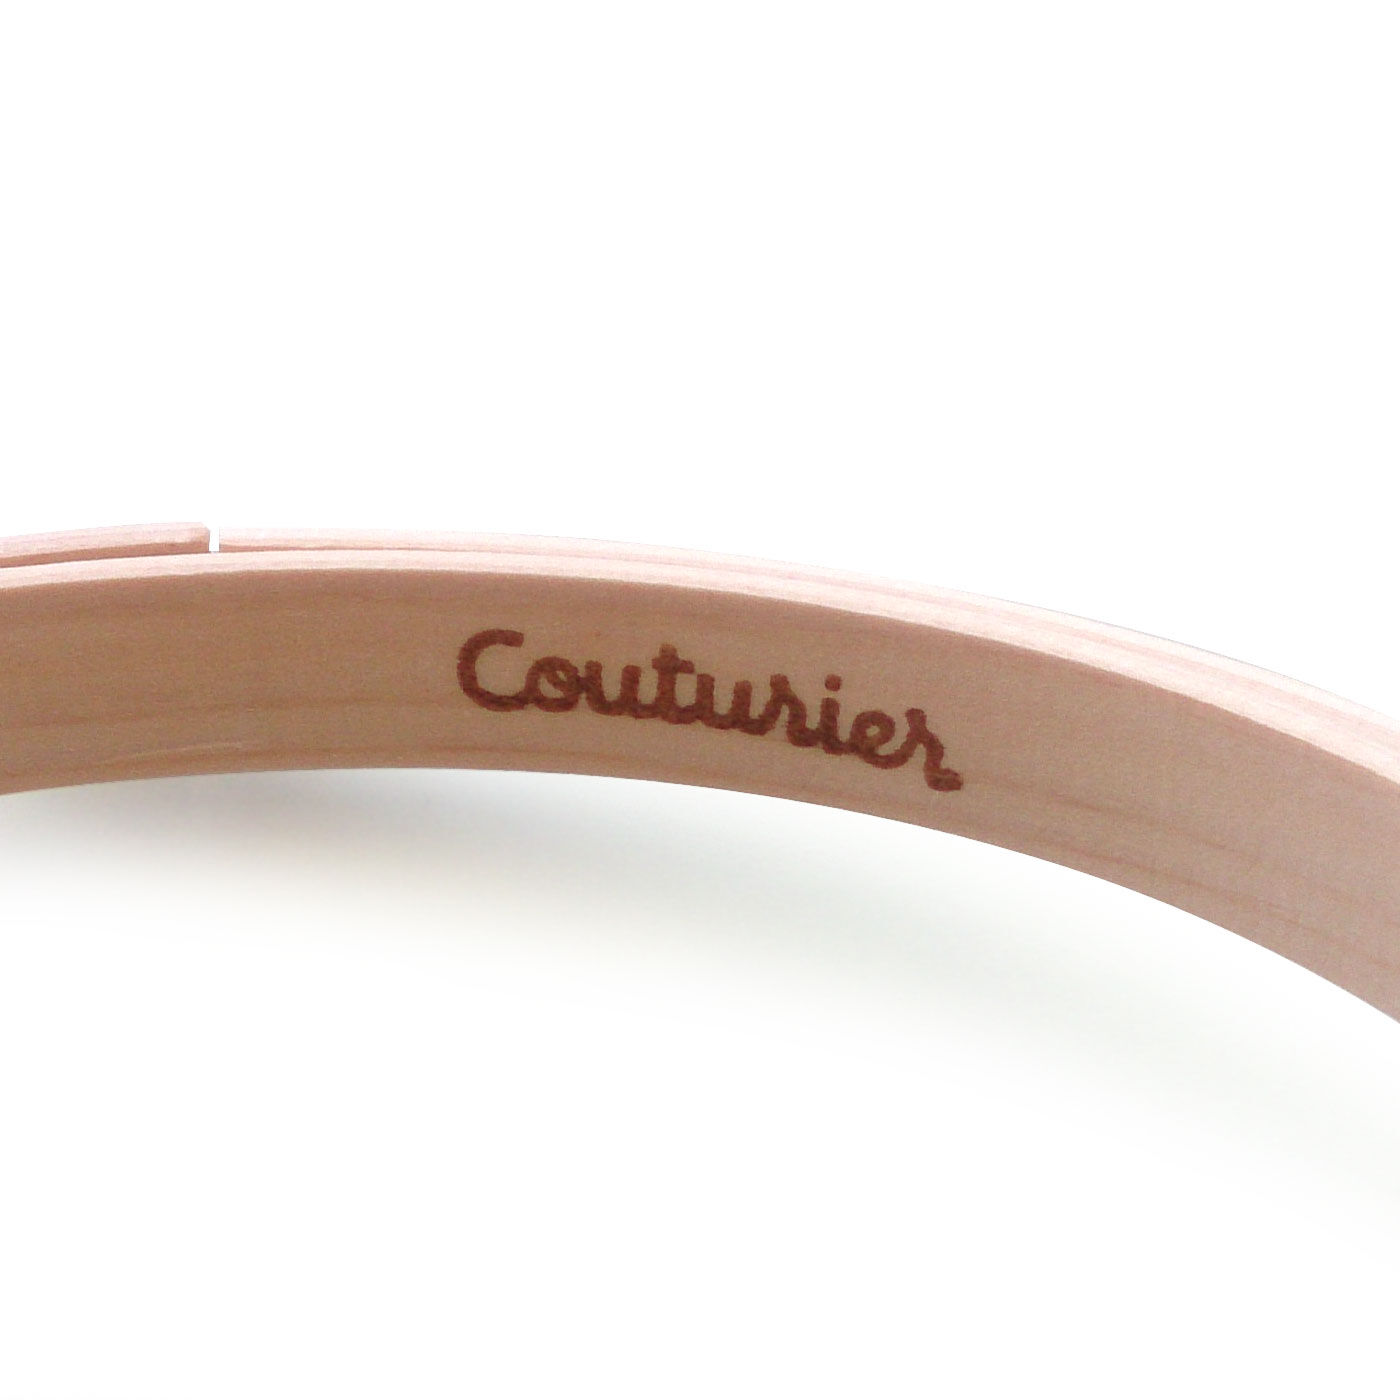 Couturier|小さめ面積を刺すのに便利　直径12cm刺しゅう枠|枠の内側にクチュリエオリジナルのロゴ入り。